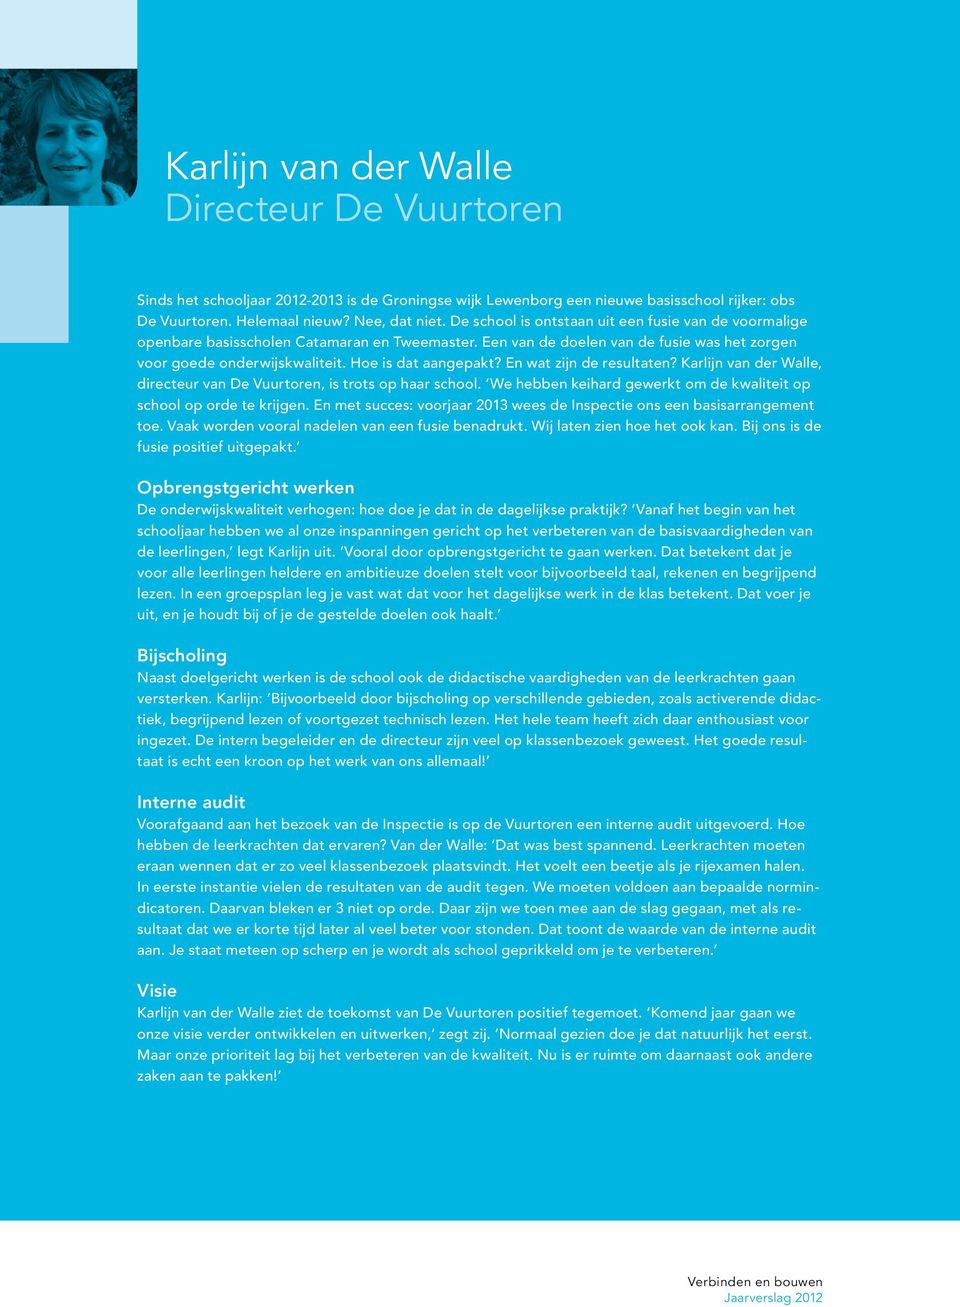 En wat zijn de resultaten? Karlijn van der Walle, directeur van De Vuurtoren, is trots op haar school. We hebben keihard gewerkt om de kwaliteit op school op orde te krijgen.